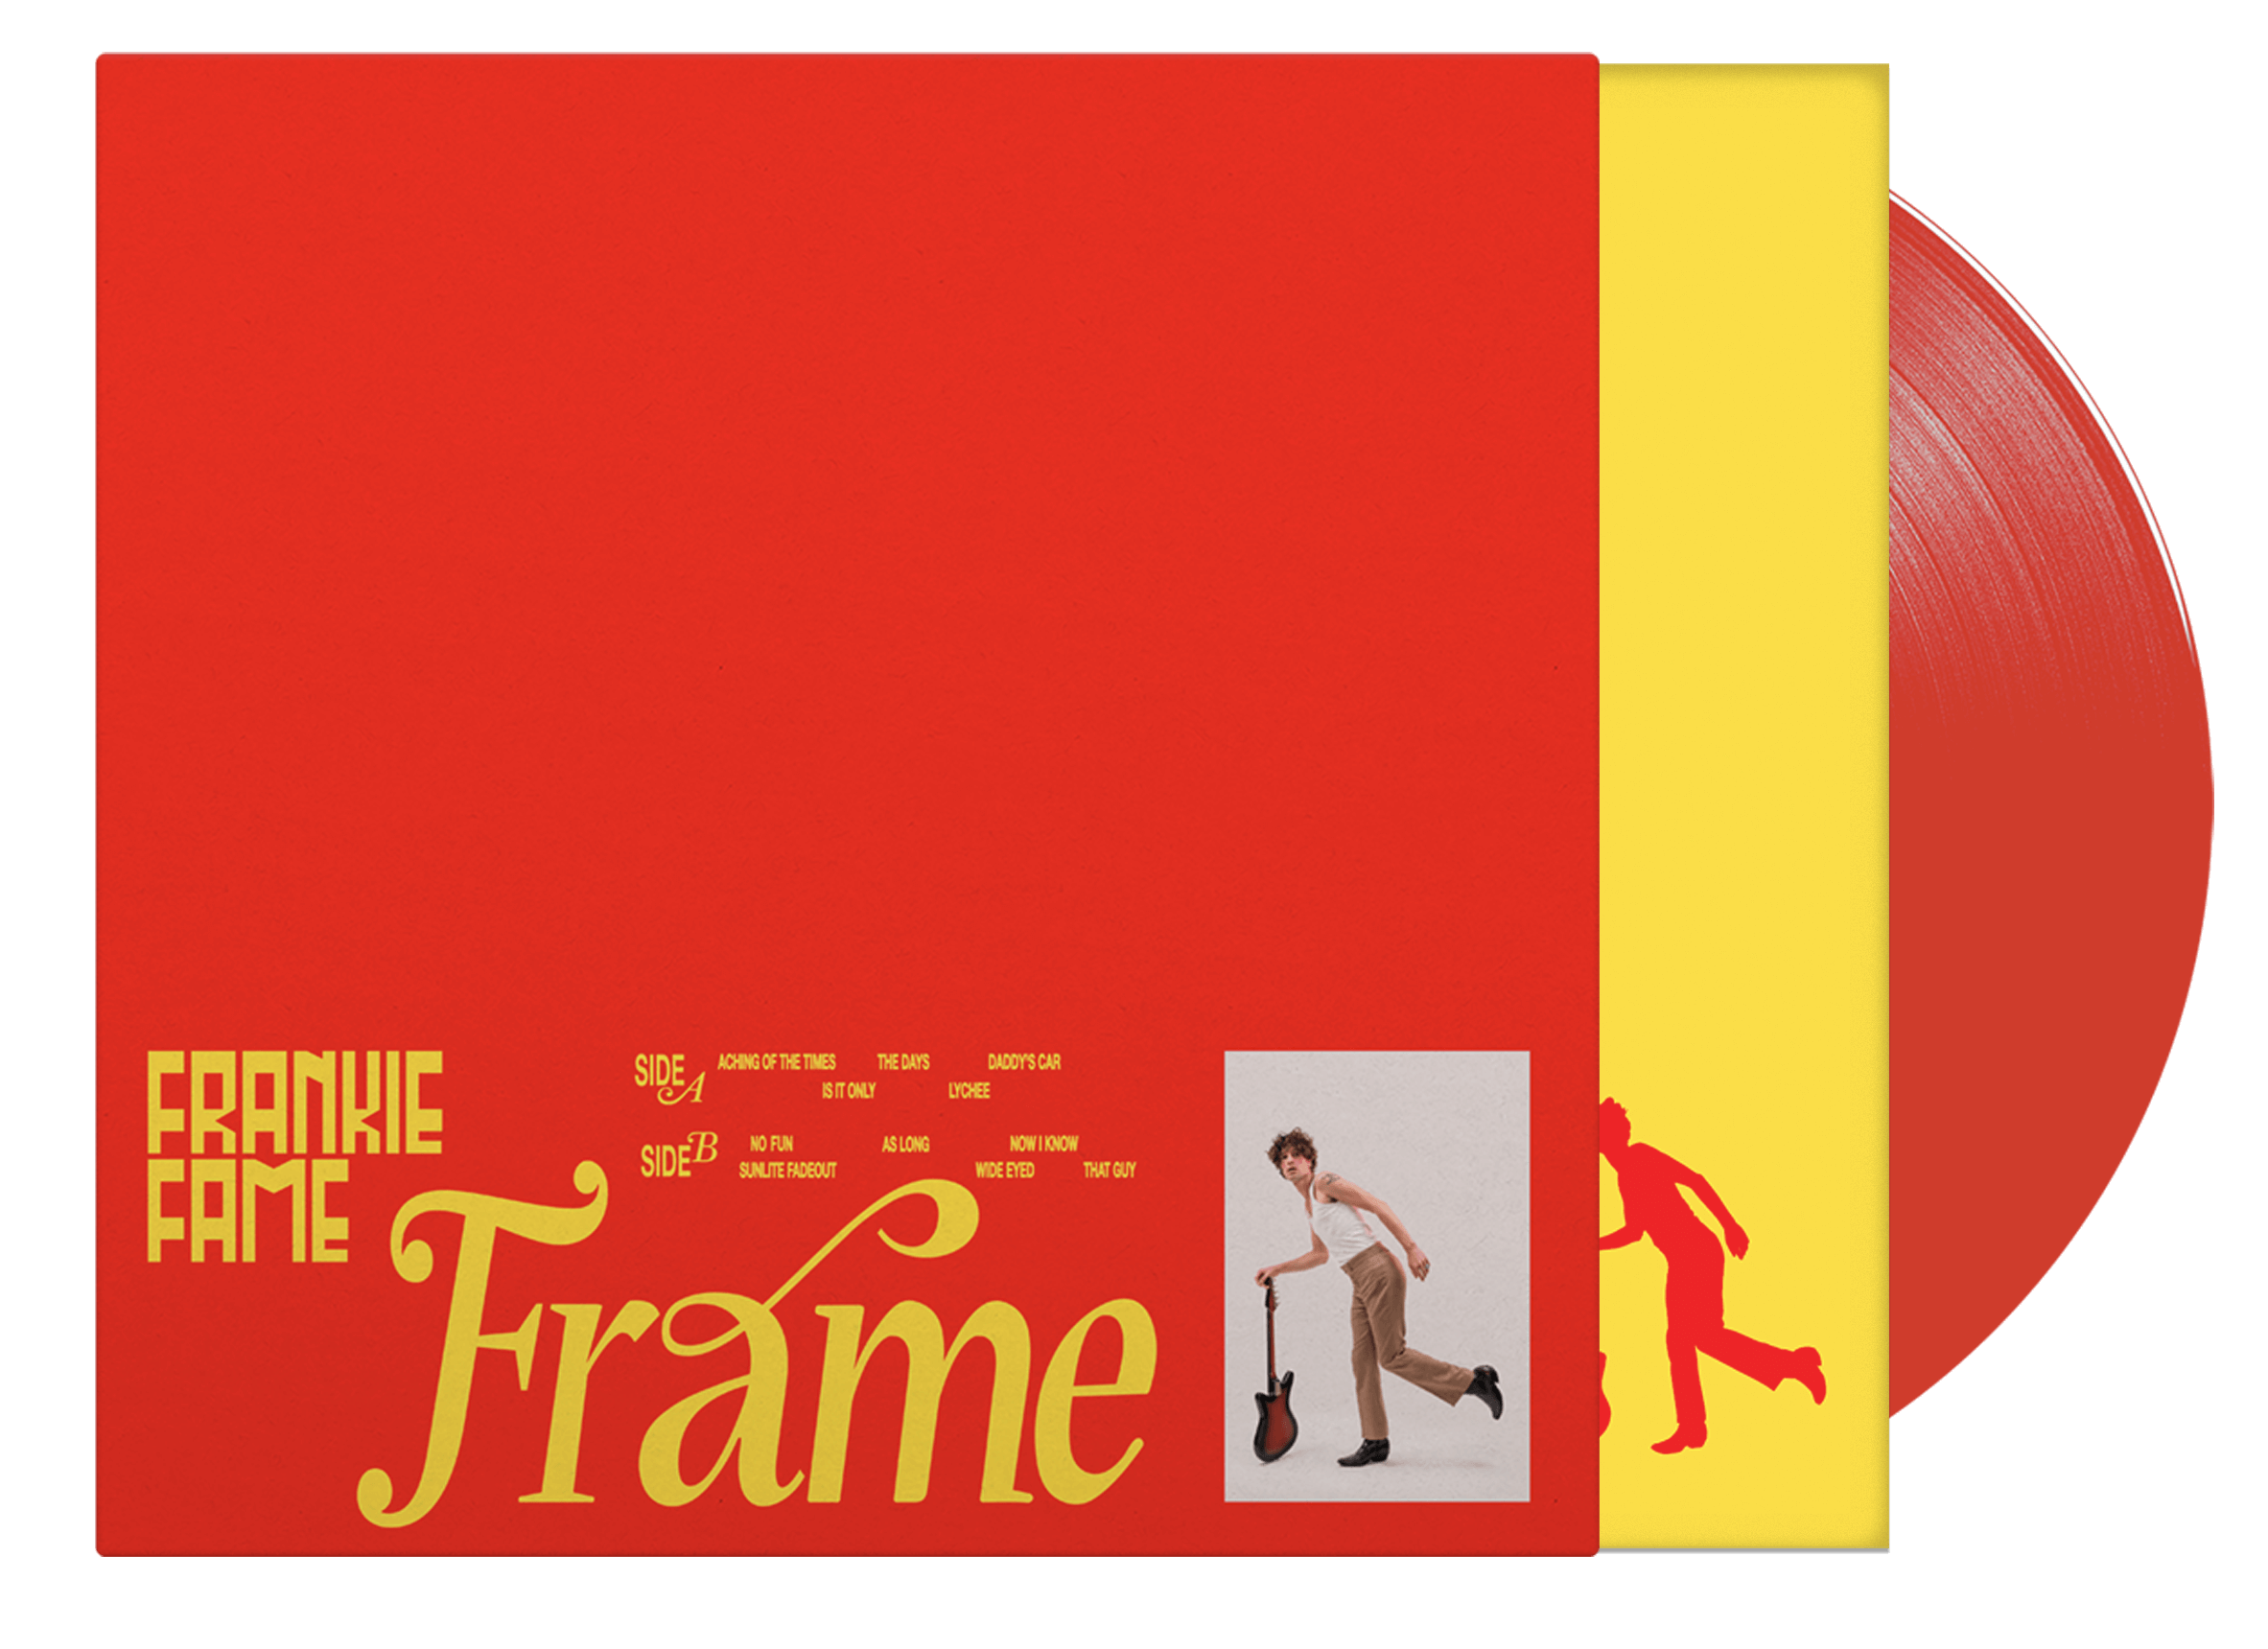 FRANKIE FAME - Frame